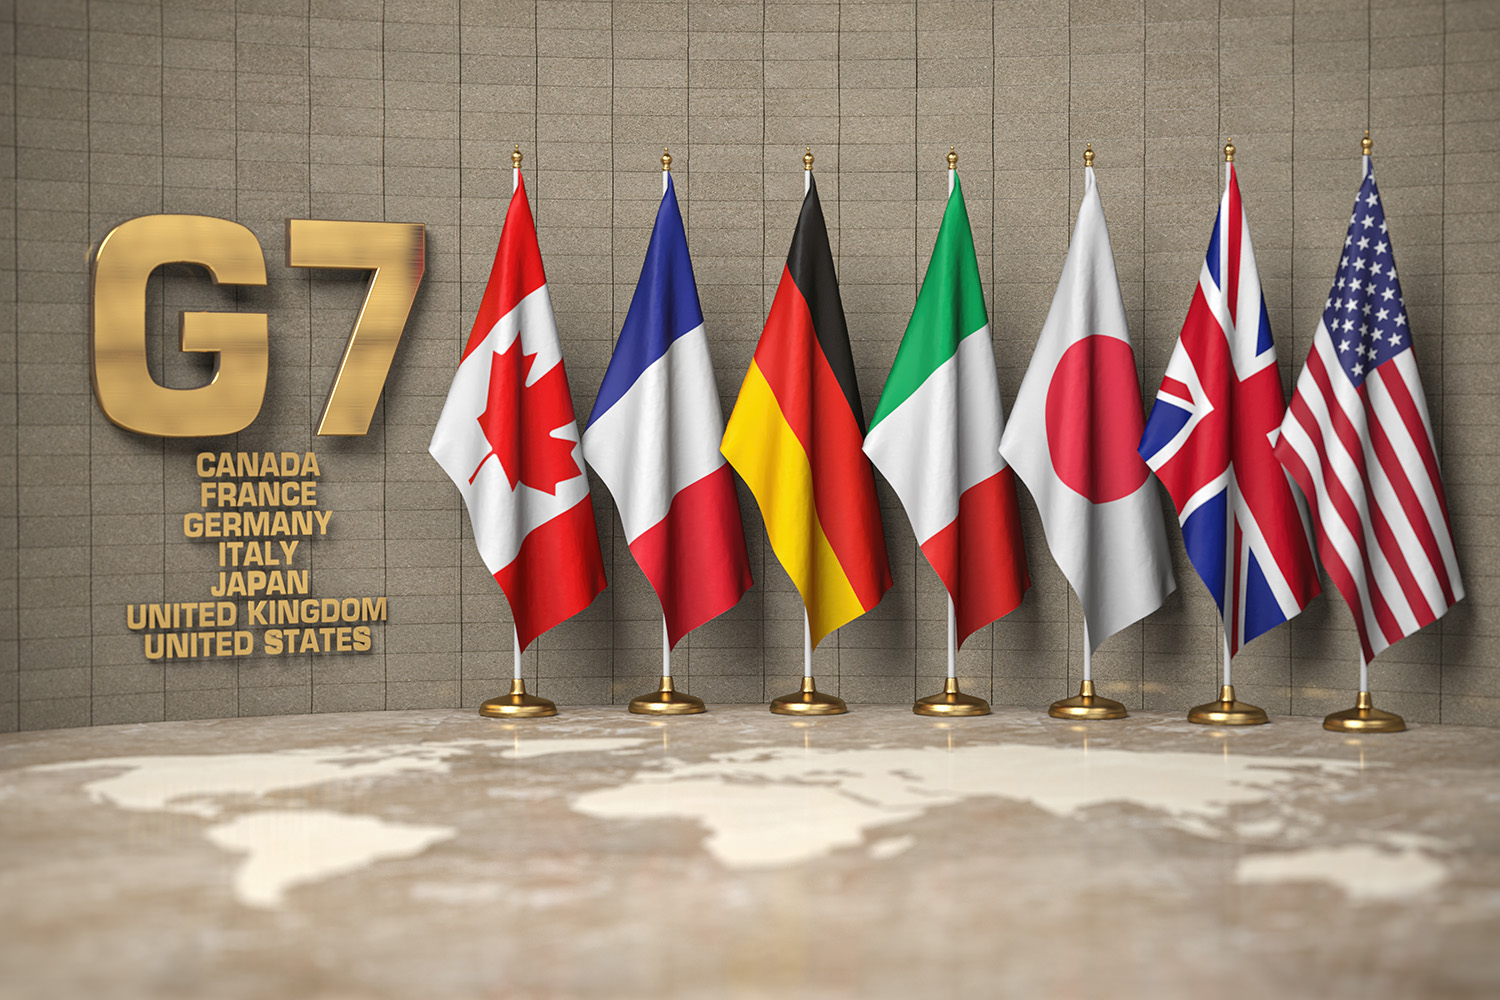 ¡Entérese! El G7 se coordinará tras rebelión del Grupo Wagner en Rusia